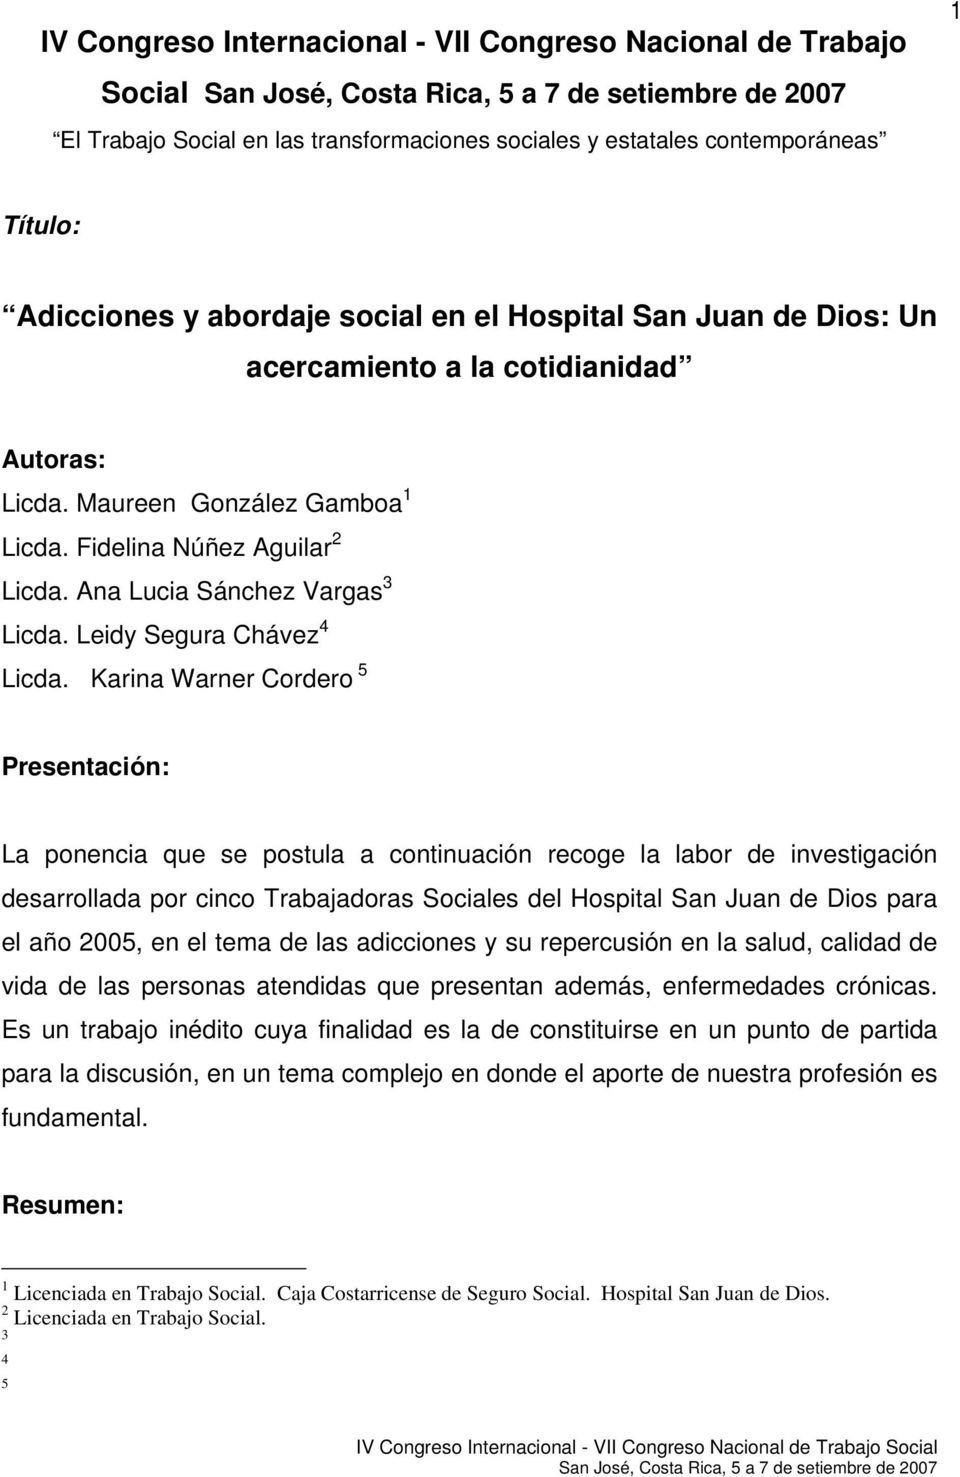 Karina Warner Cordero 5 Presentación: La ponencia que se postula a continuación recoge la labor de investigación desarrollada por cinco Trabajadoras Sociales del Hospital San Juan de Dios para el año